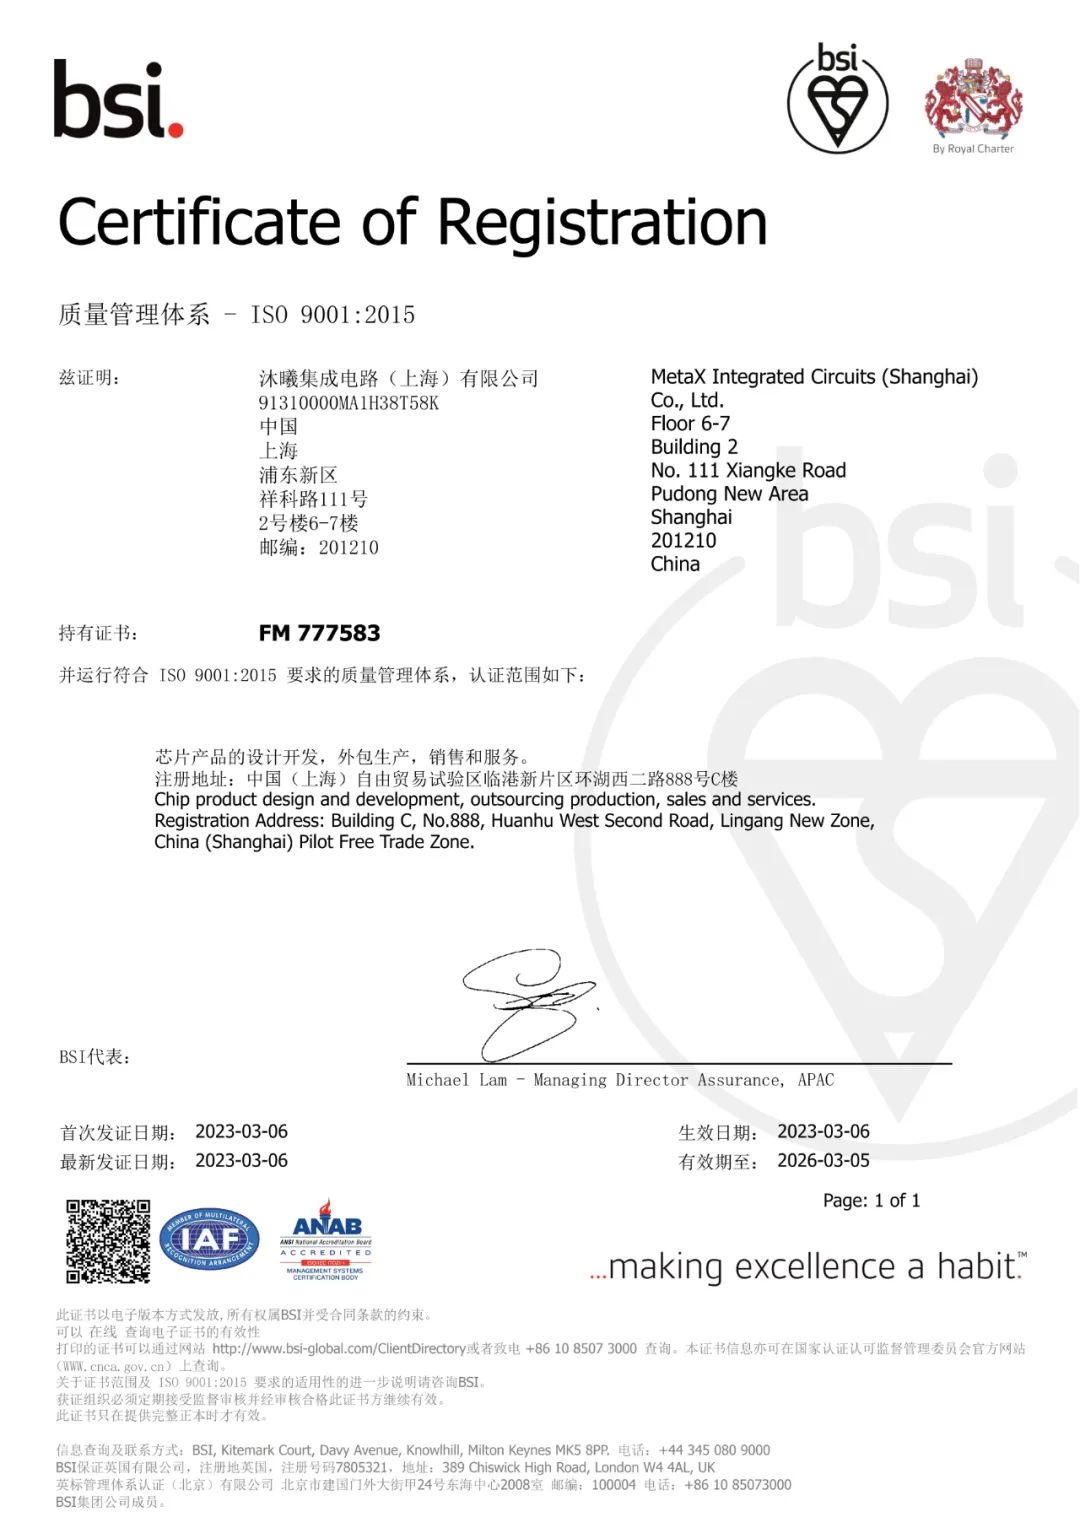 沐曦集成电路通过ISO 9001国际质量管理体系认证